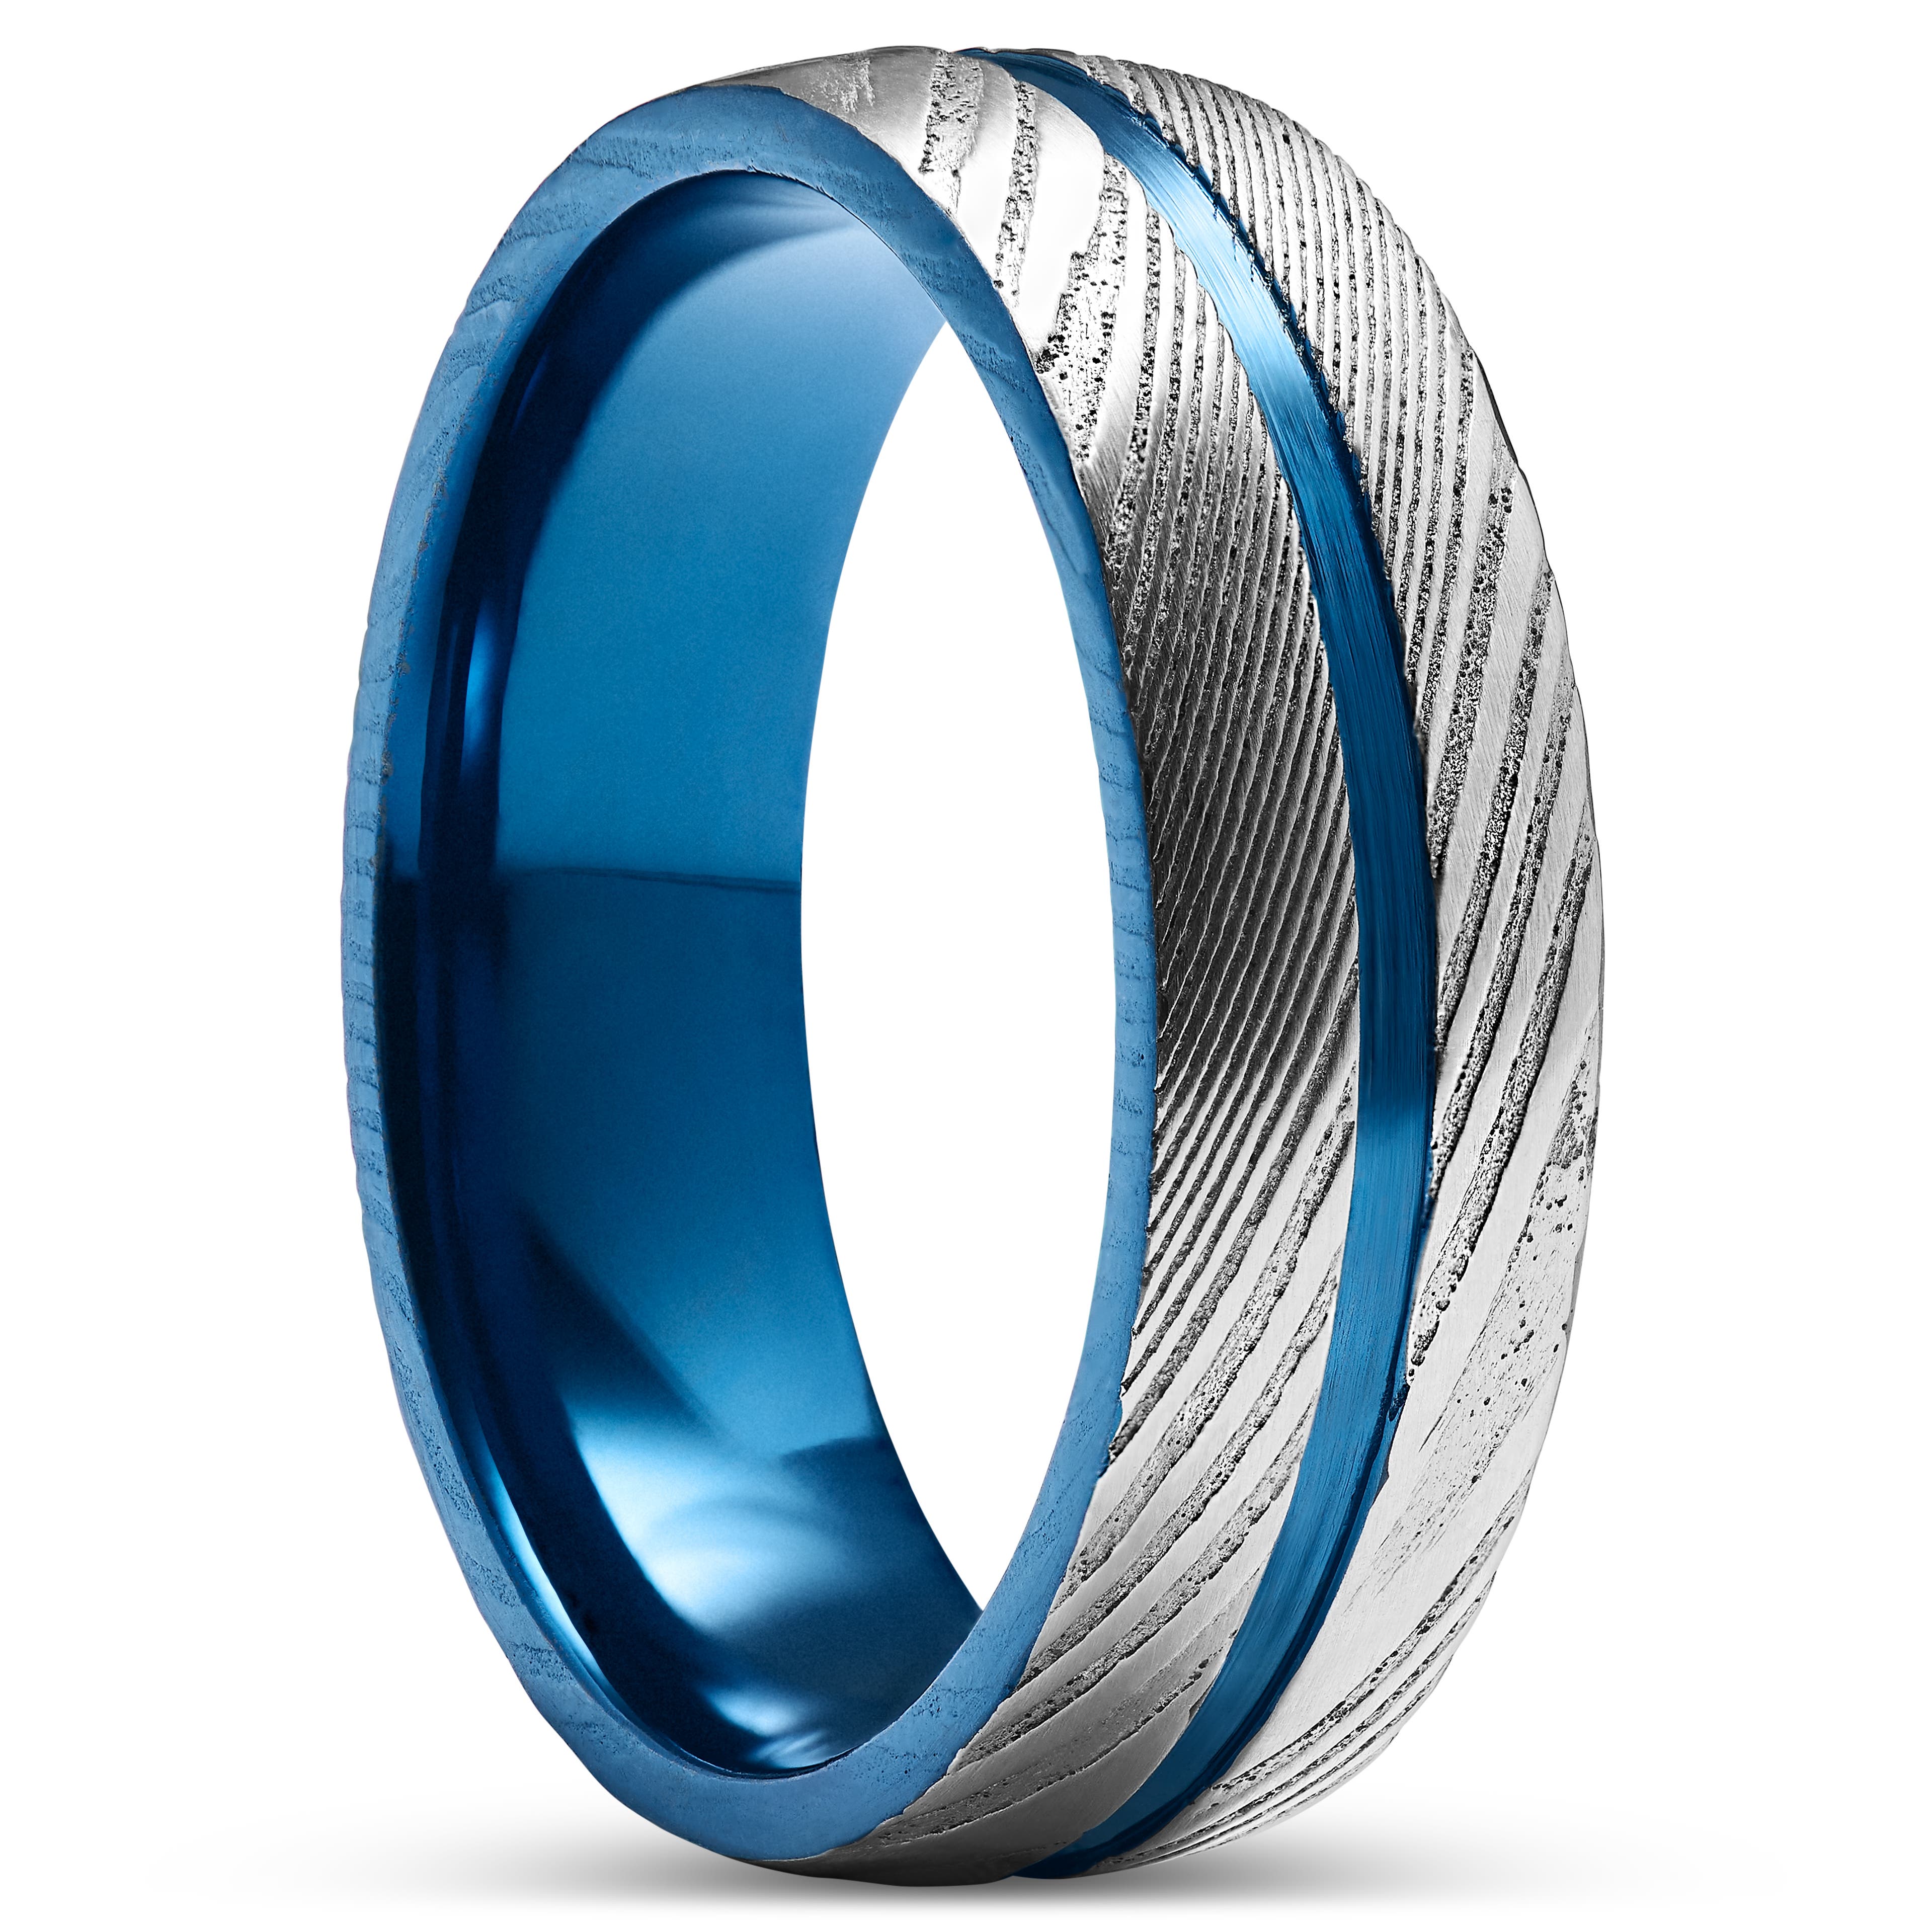 Fortis | 7mm prsten s drážkou z damaškové oceli stříbrné barvy a titanu v modré barvě 